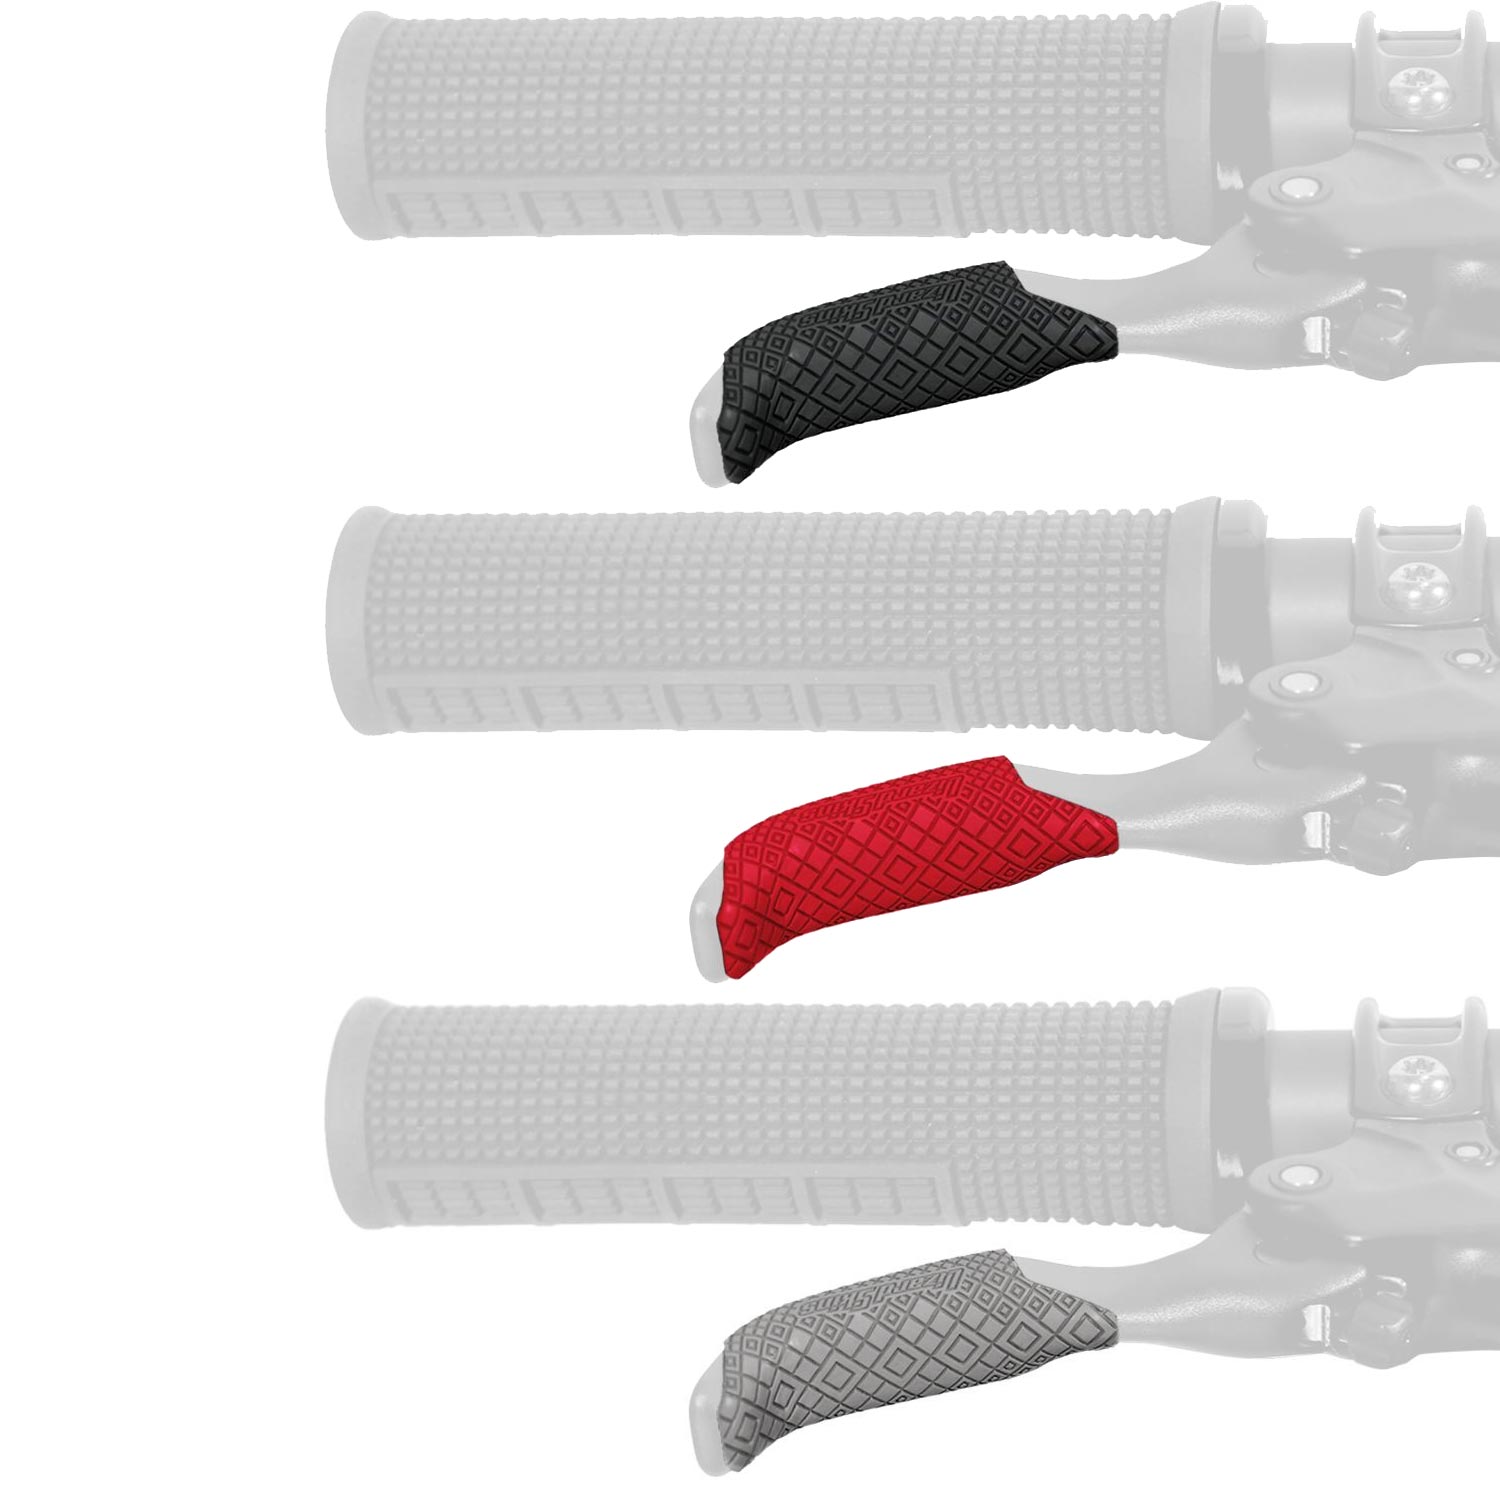 Produktbild von Lizard Skins DSP Lever Grip Bremshebelüberzug